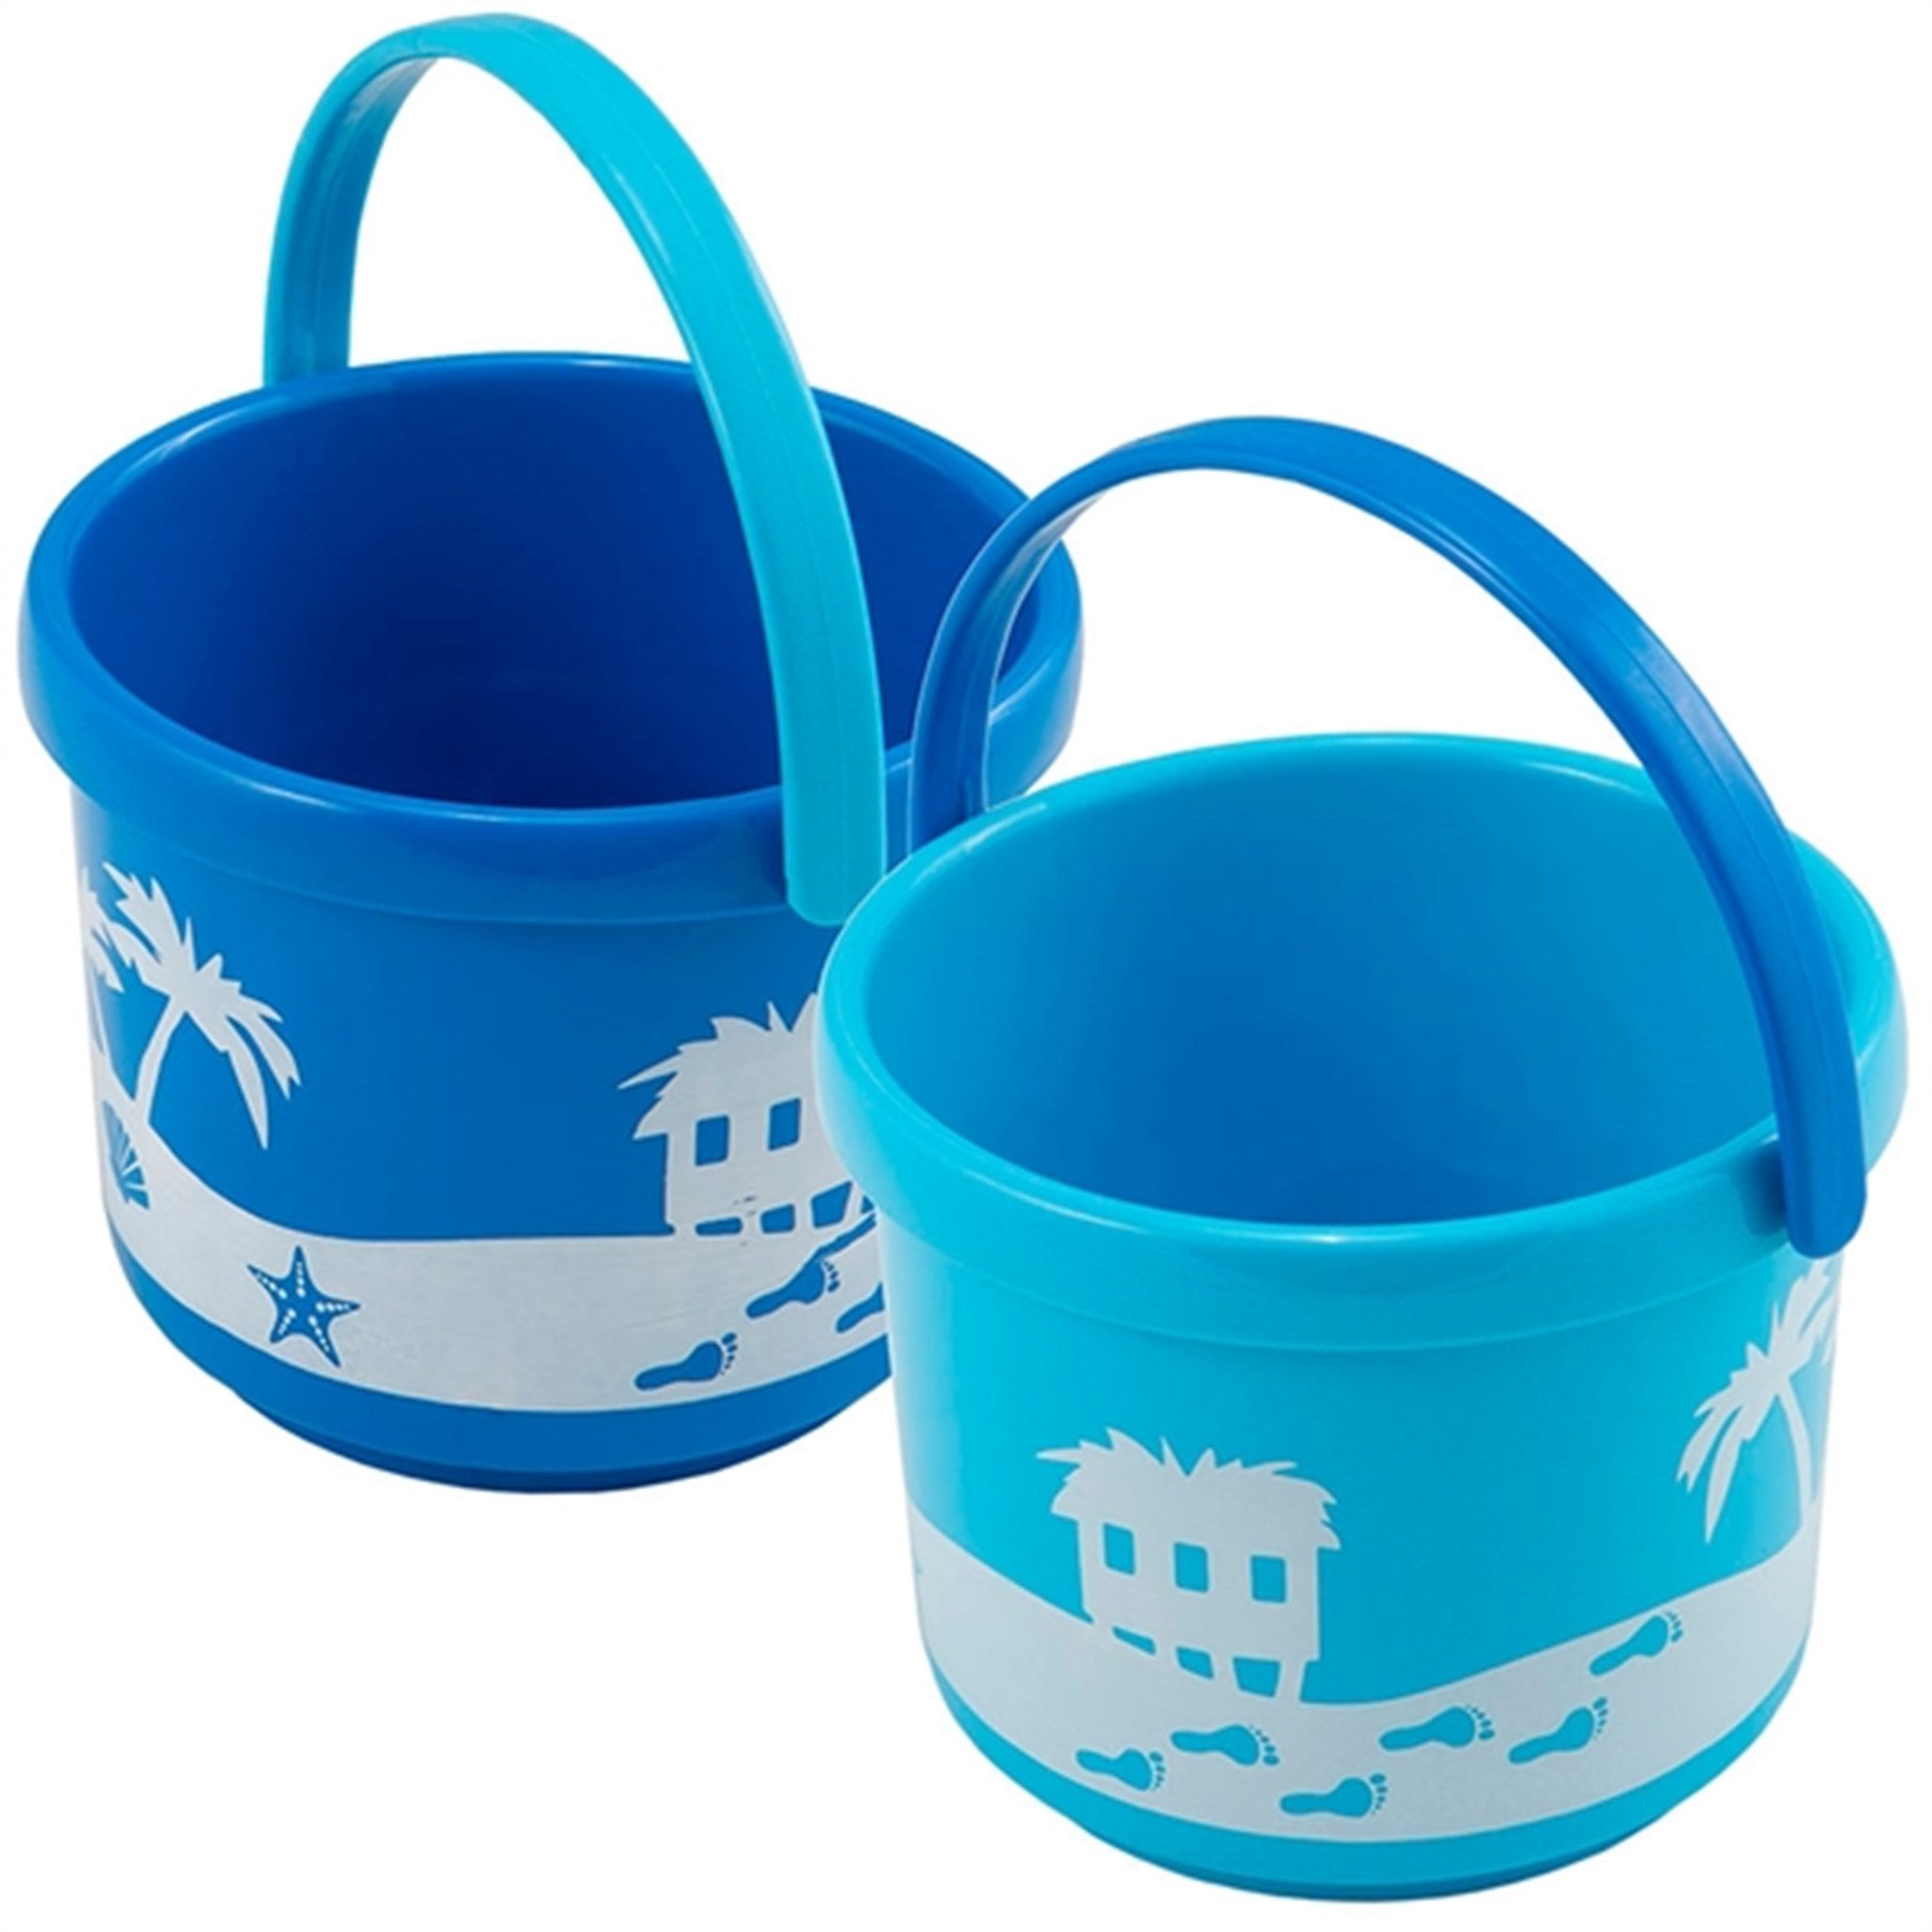 Spielstabil Small Bucket Pirate - Blue 2